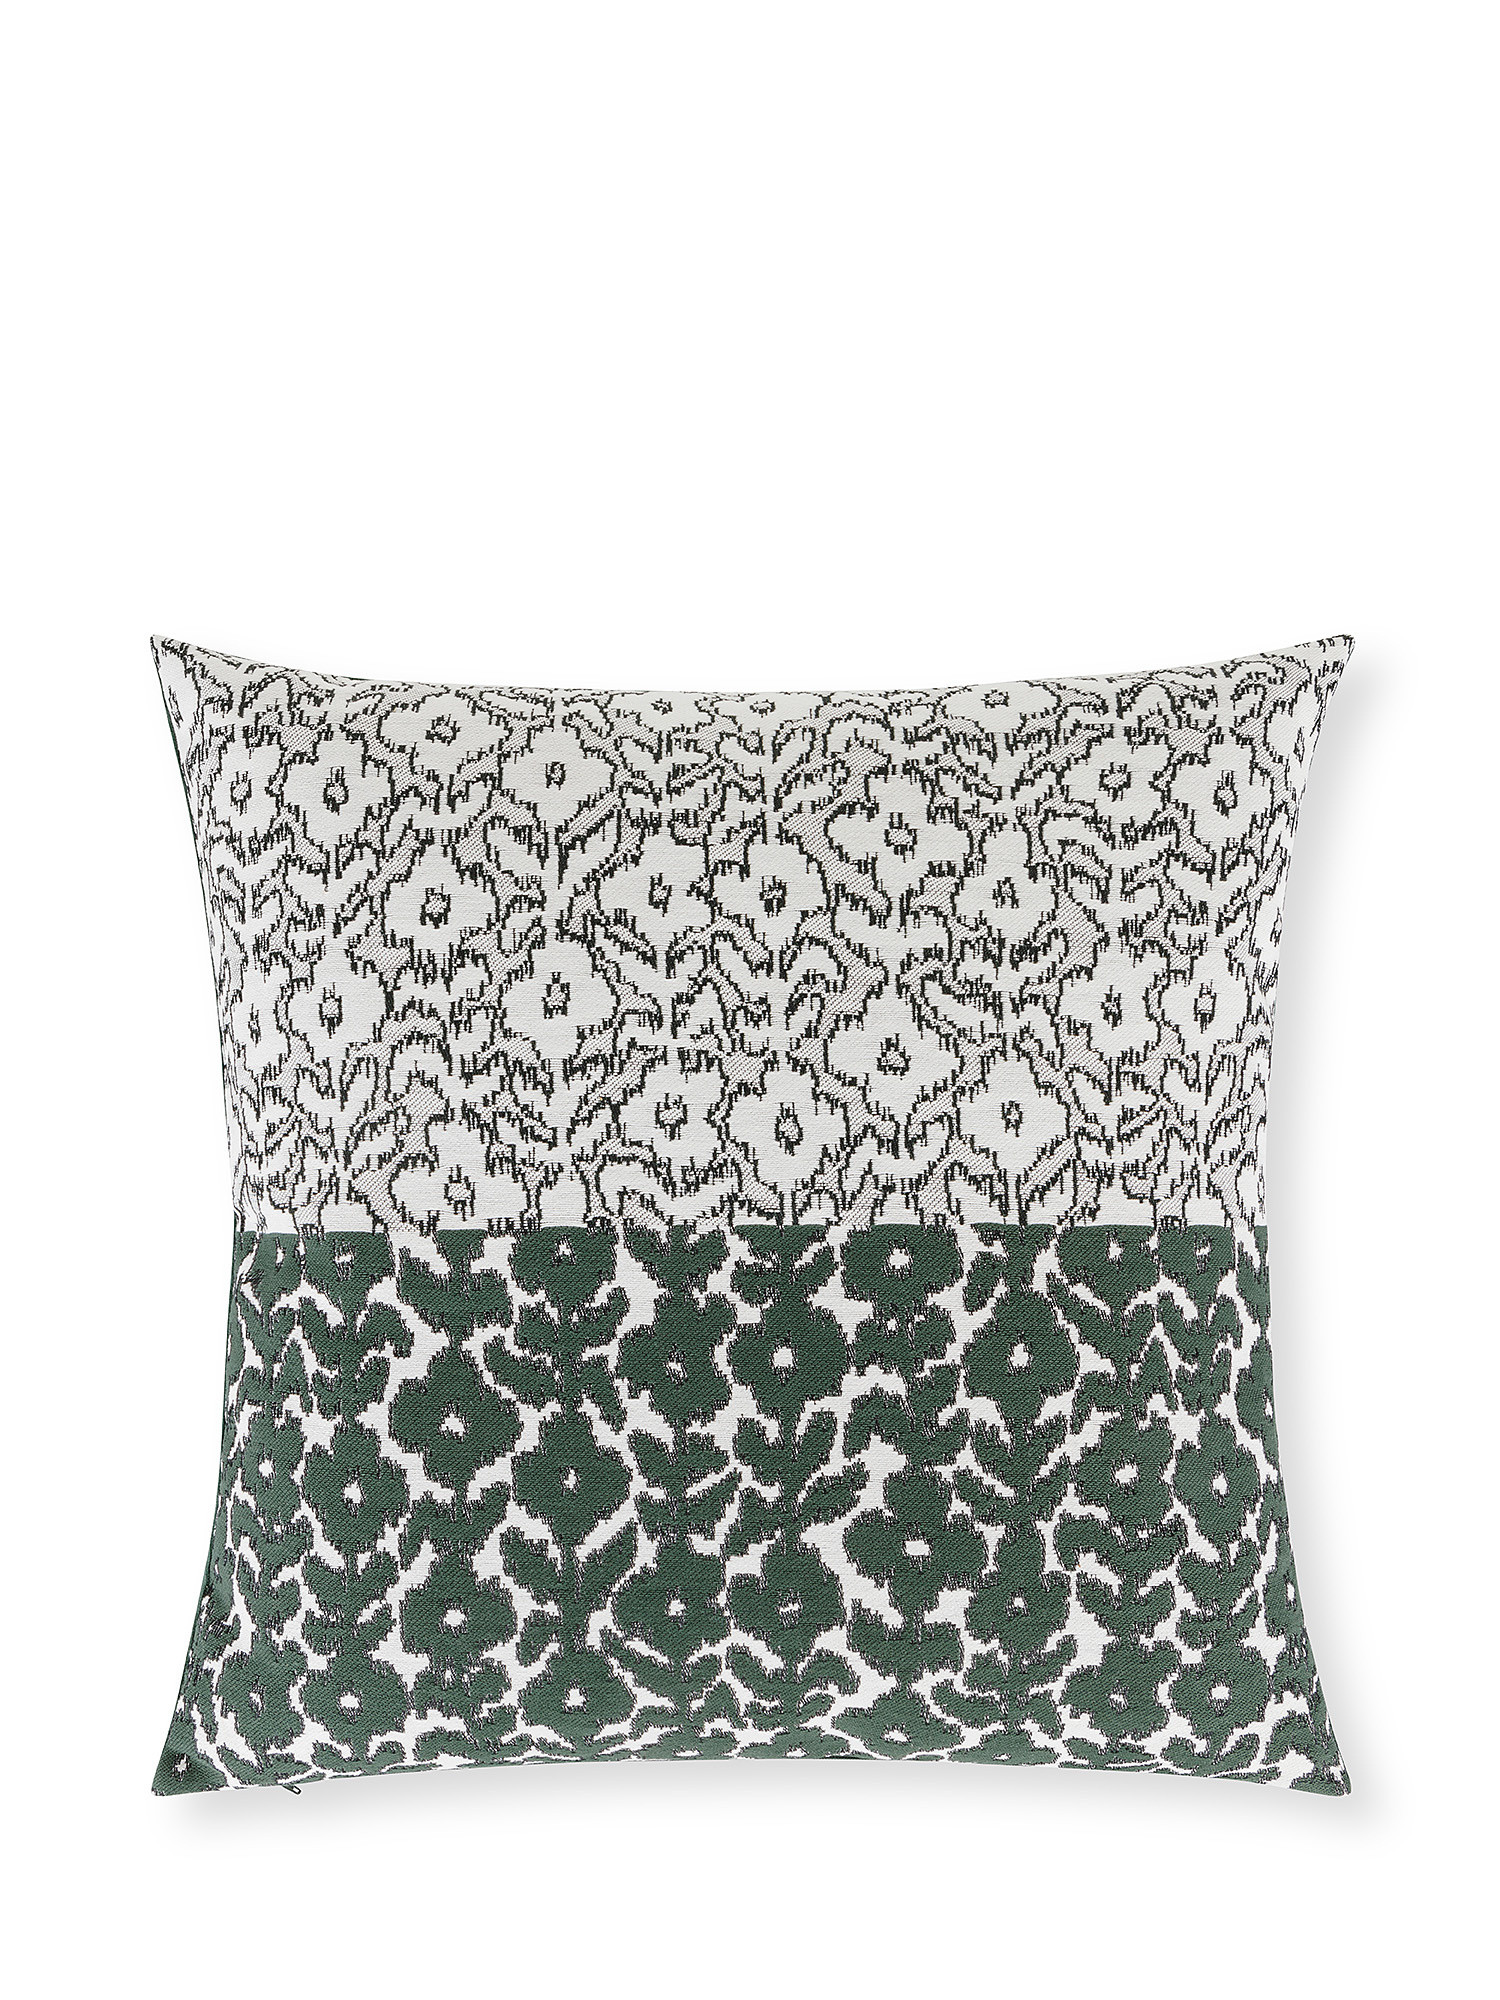 Жаккардовая подушка с цветочным мотивом 50х50см Coincasa, зеленый подушка подушка 50х50см coincasa белый